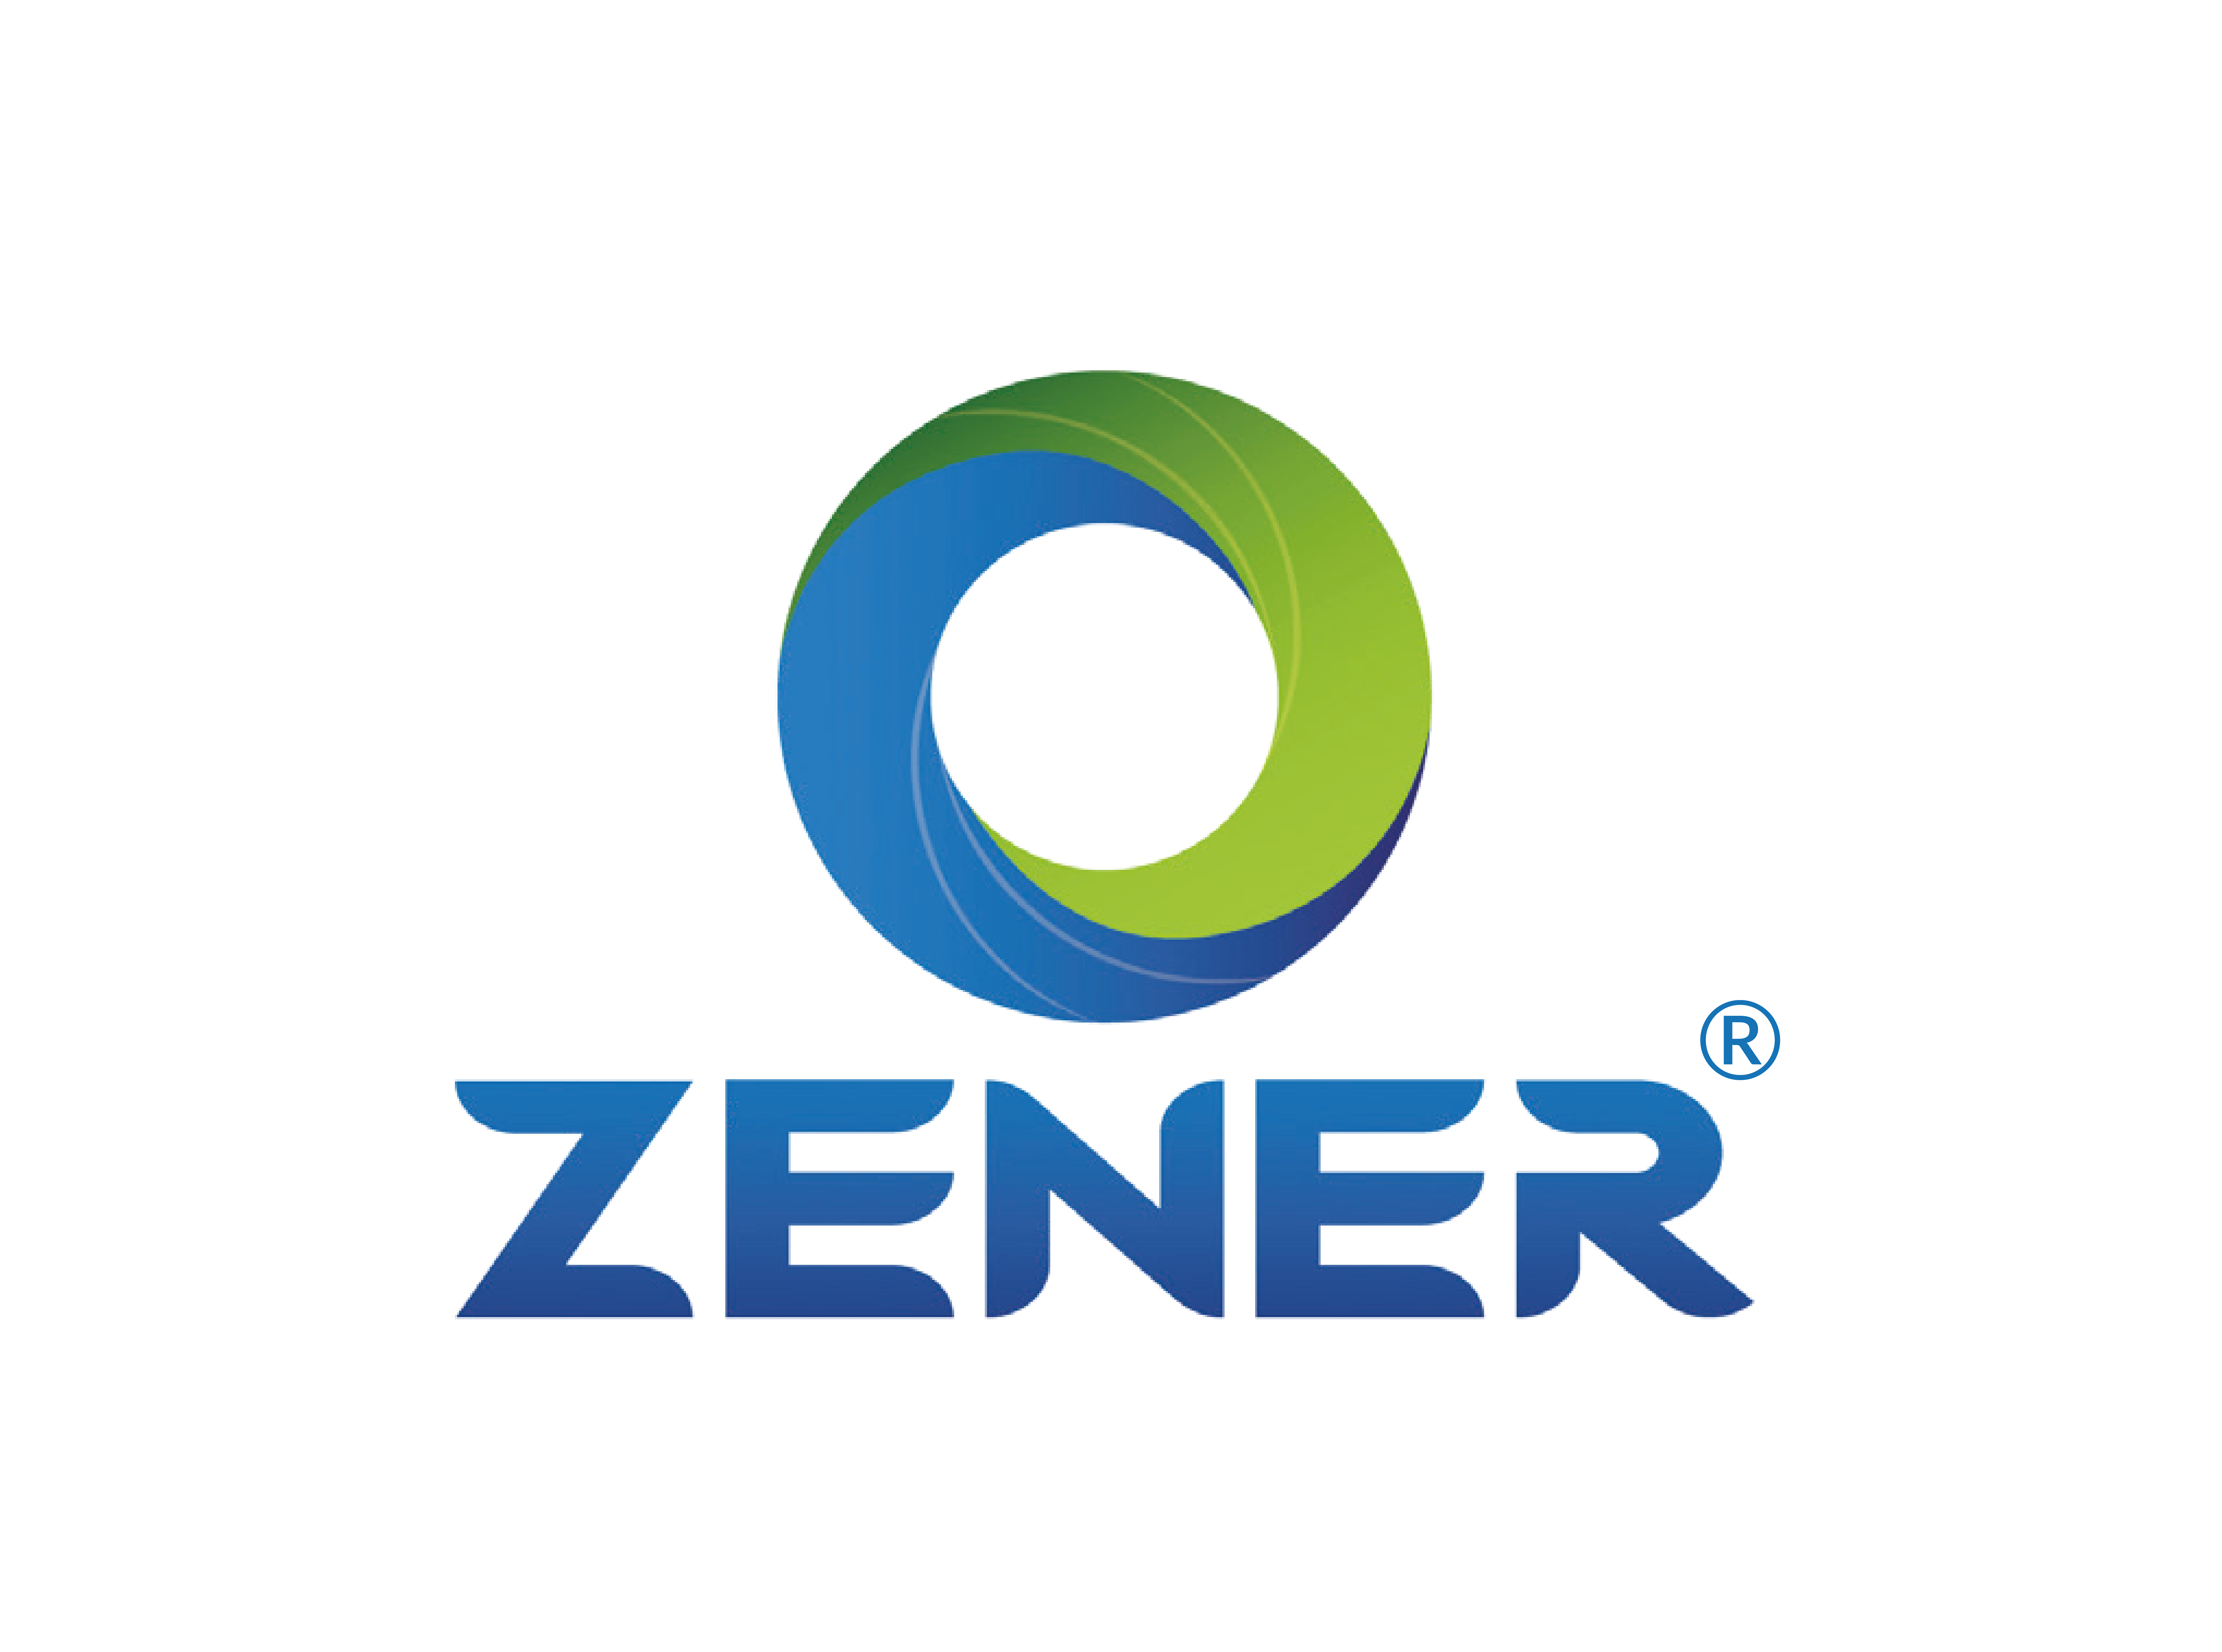 Zener logo